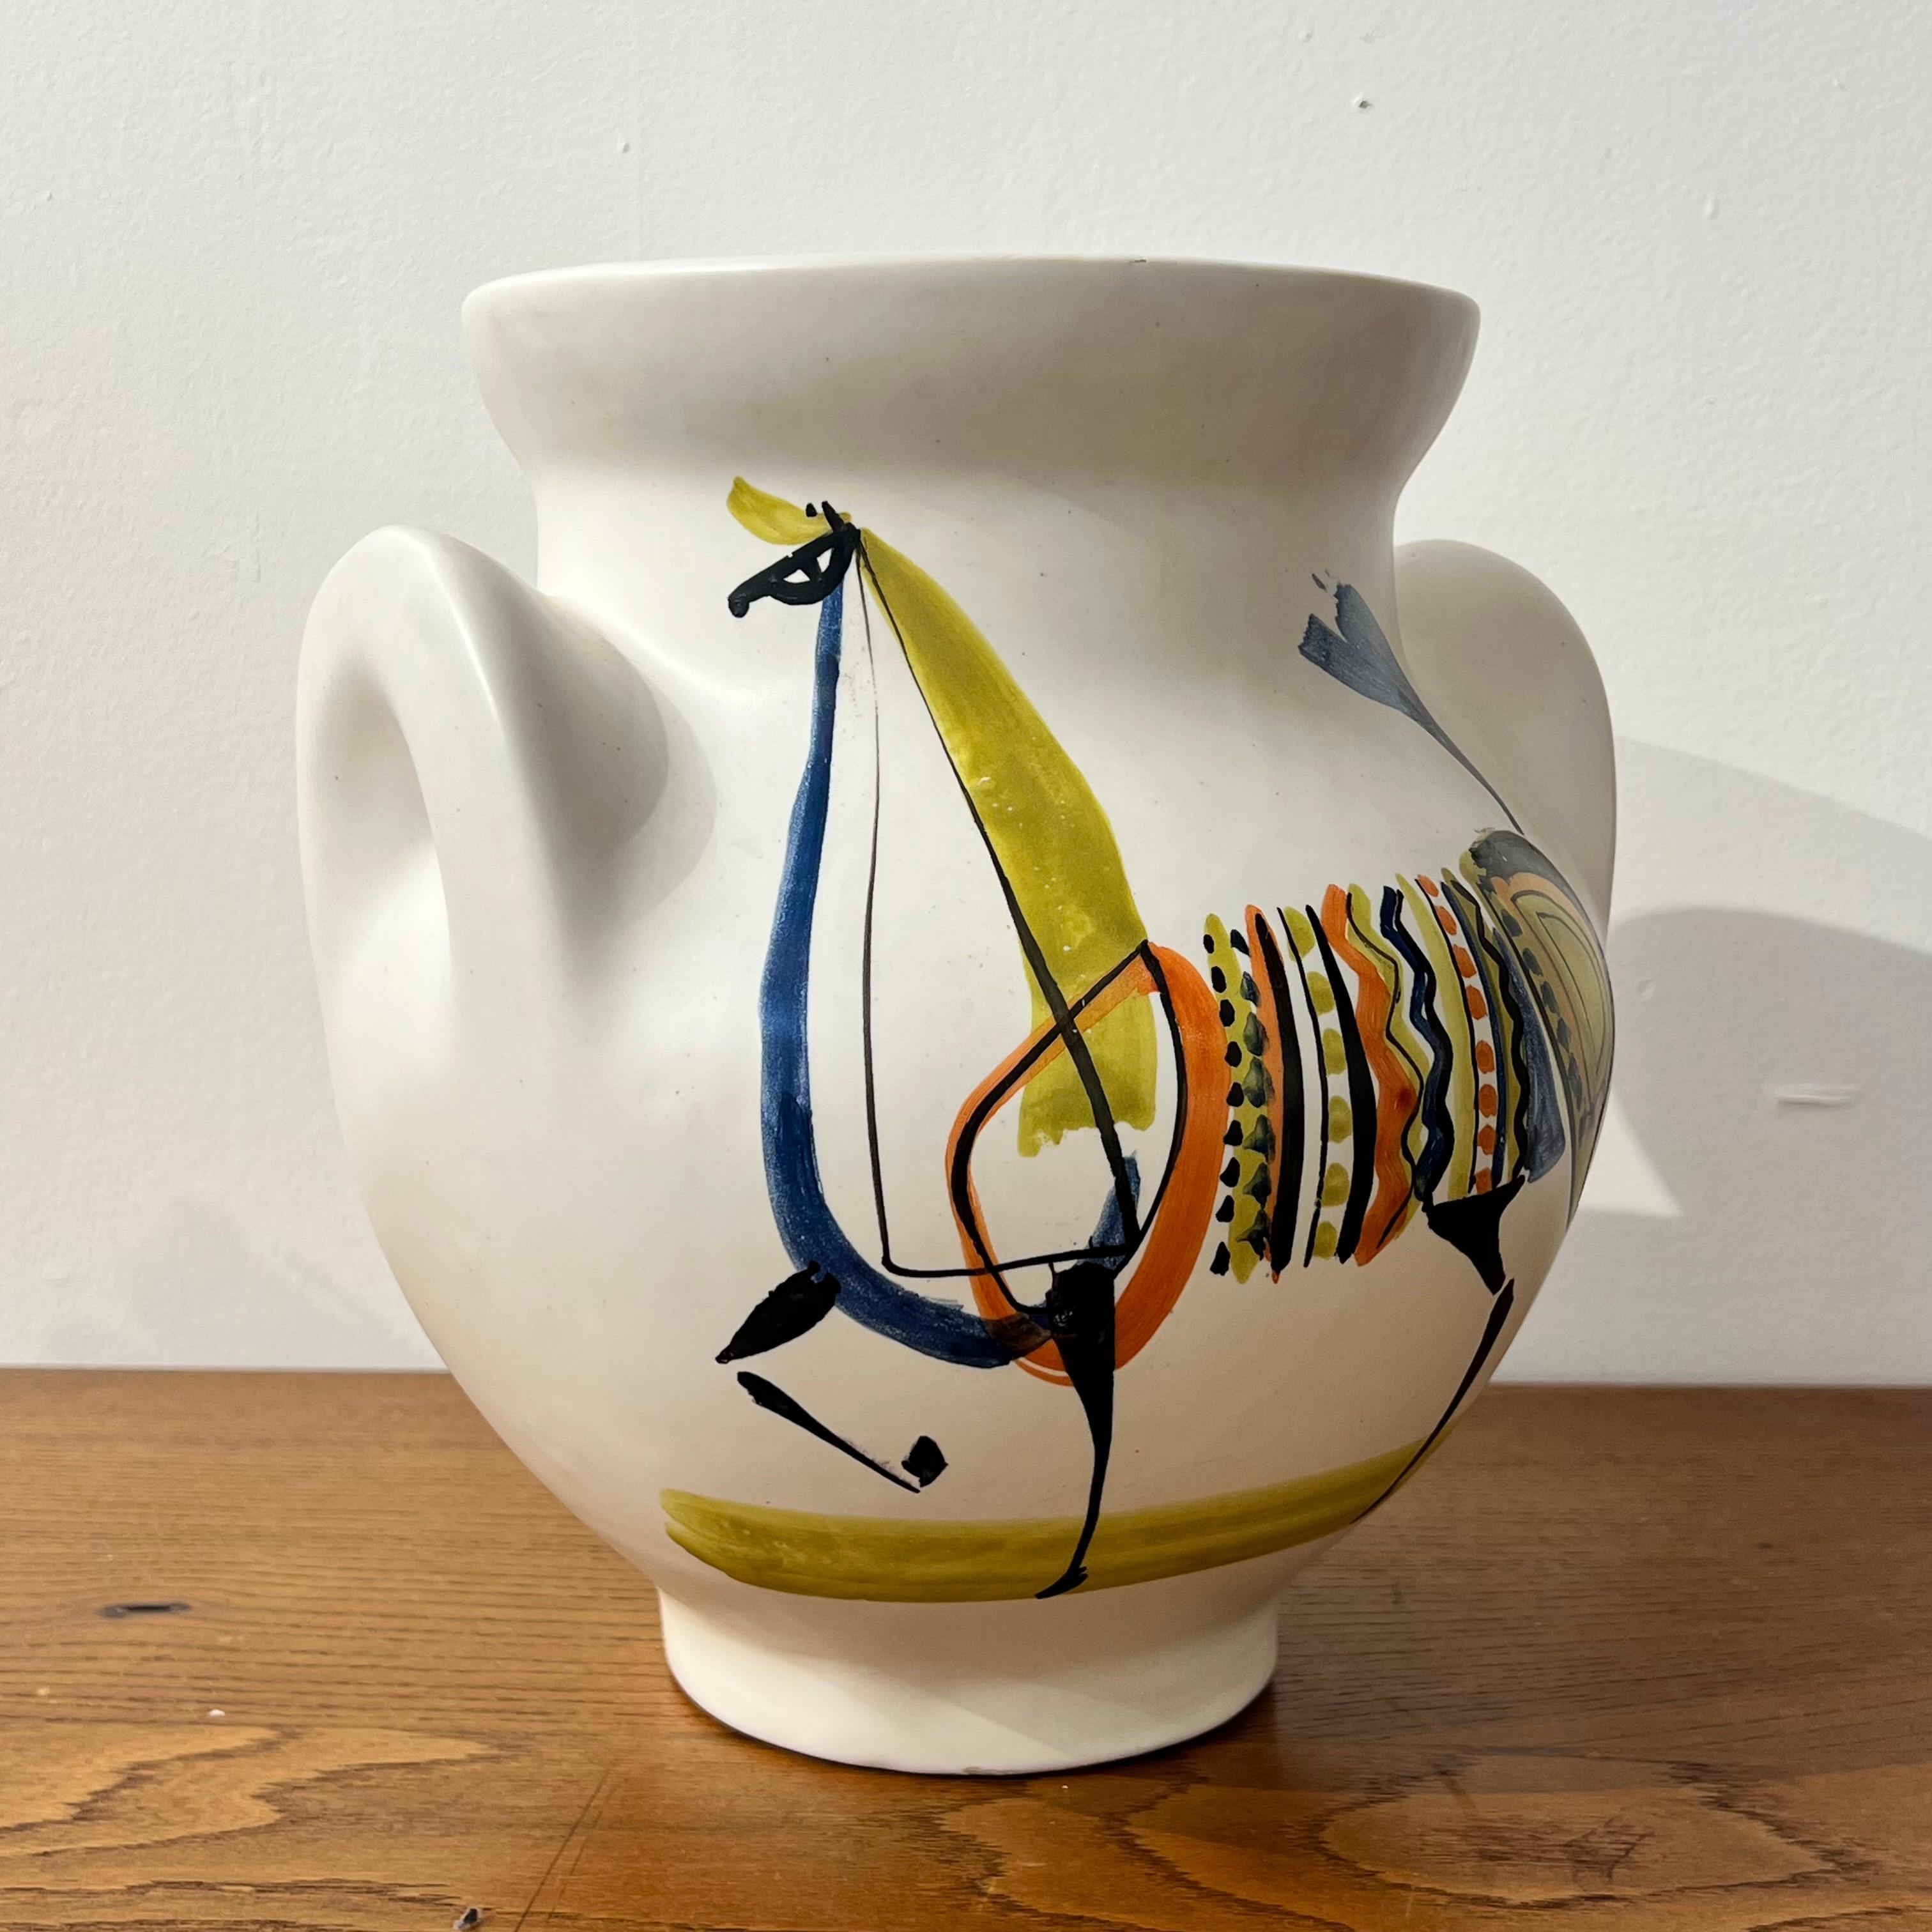 Un beau vase à oreilles de Roger Capron

Fabriqué dans les années 1950 à Vallauris, ce bel exemple présente un beau décor zoomorphe

Ce sont les formes de vases les plus collectionnées de l'artiste